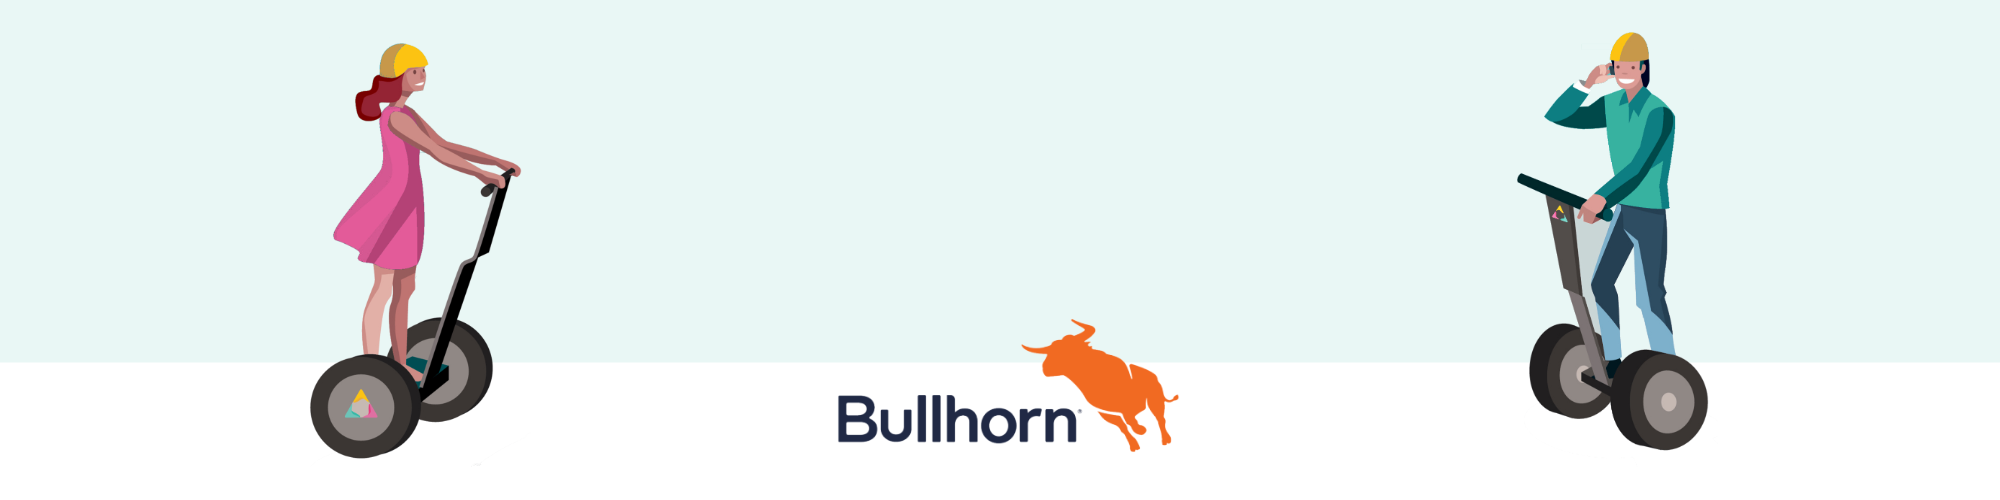 Best Bullhorn Recruitment Training